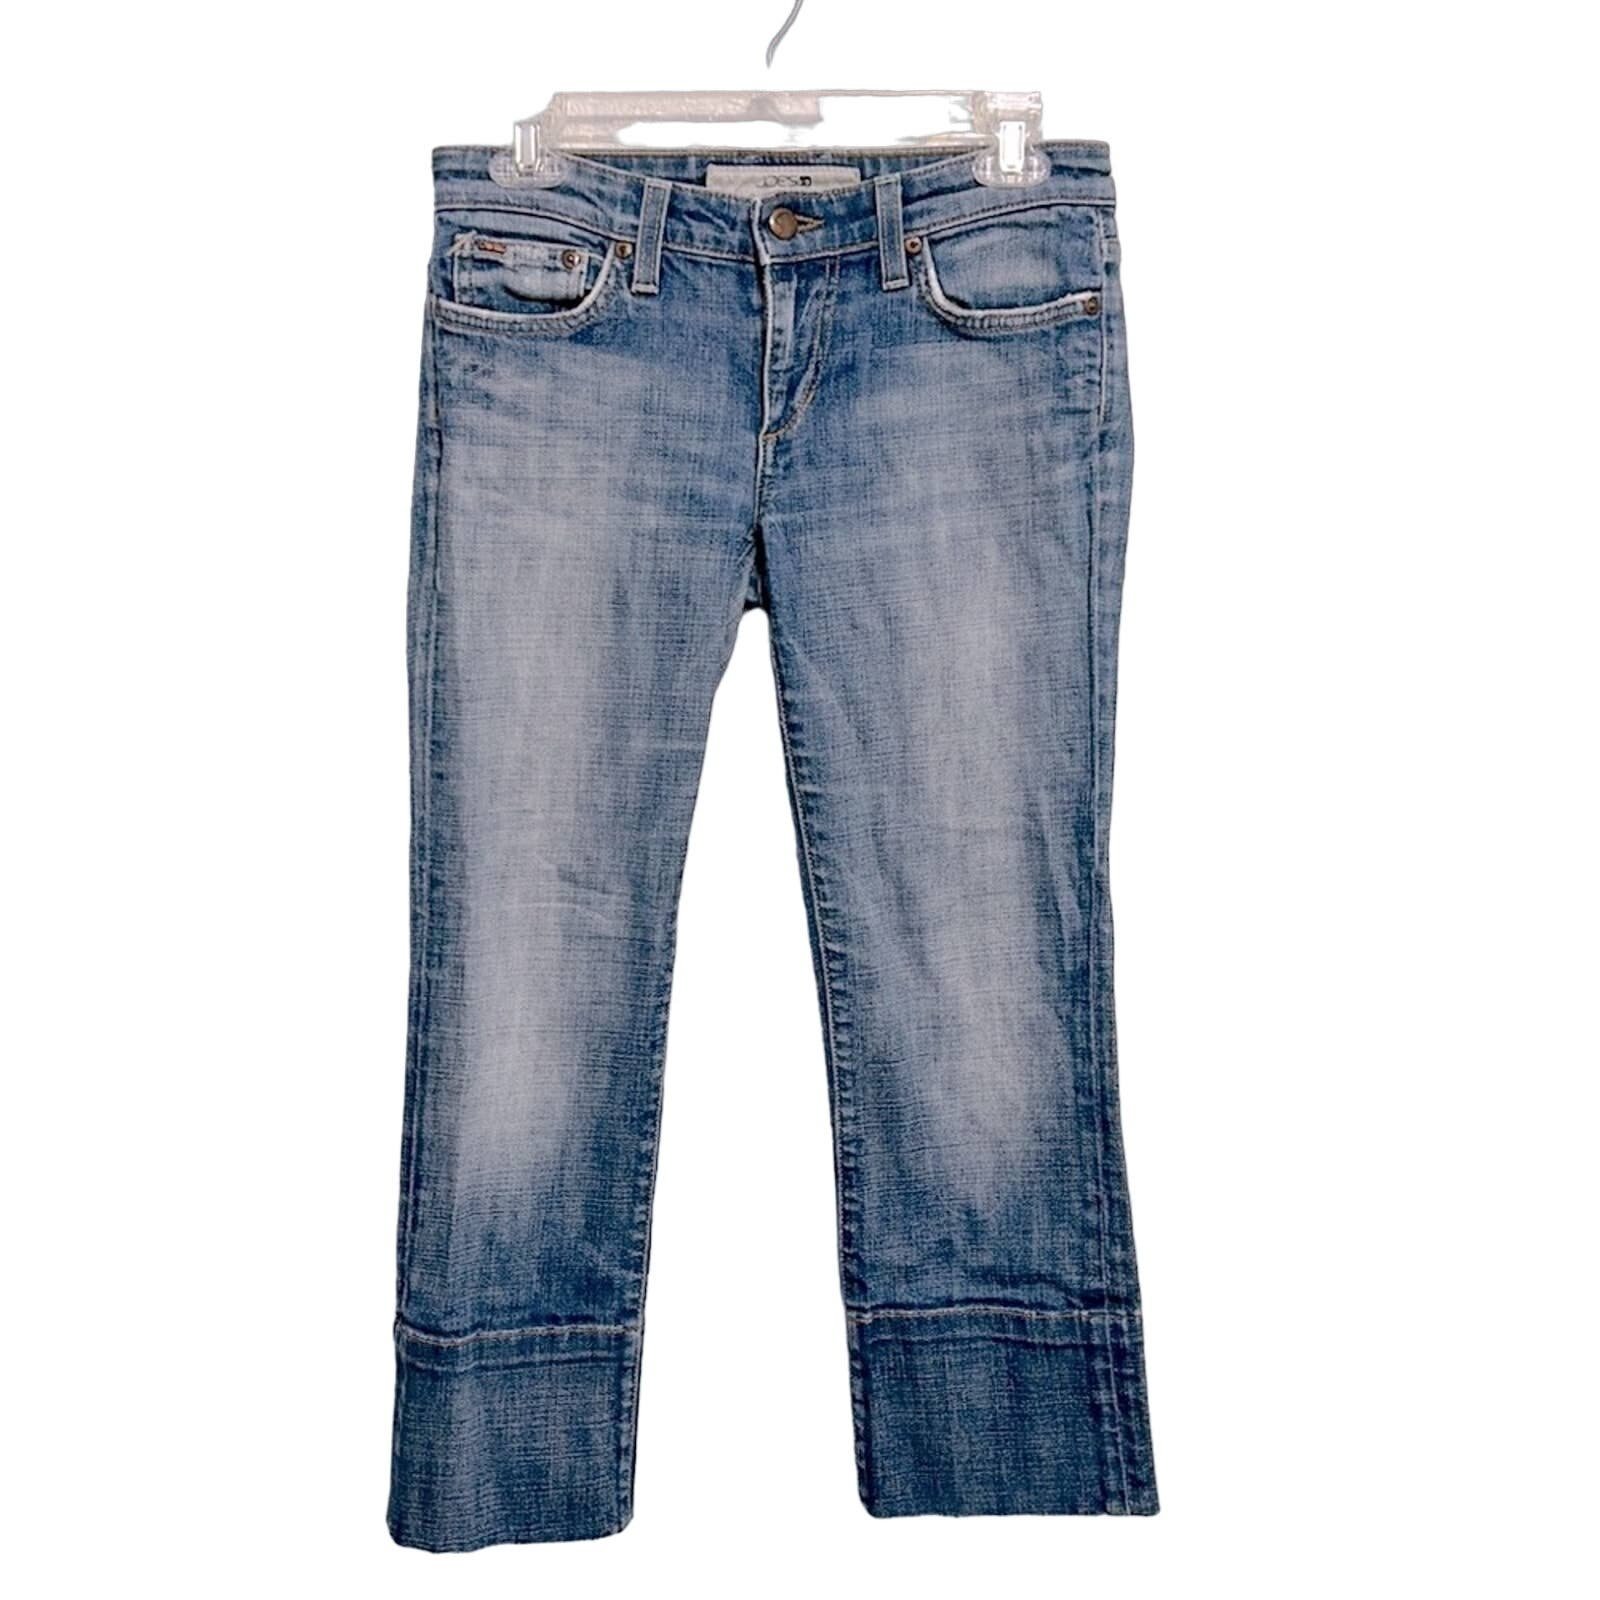 Promotions  Joe’s Jeans Womens cropped jeans women´s size 26 fi6zFd4La New Style